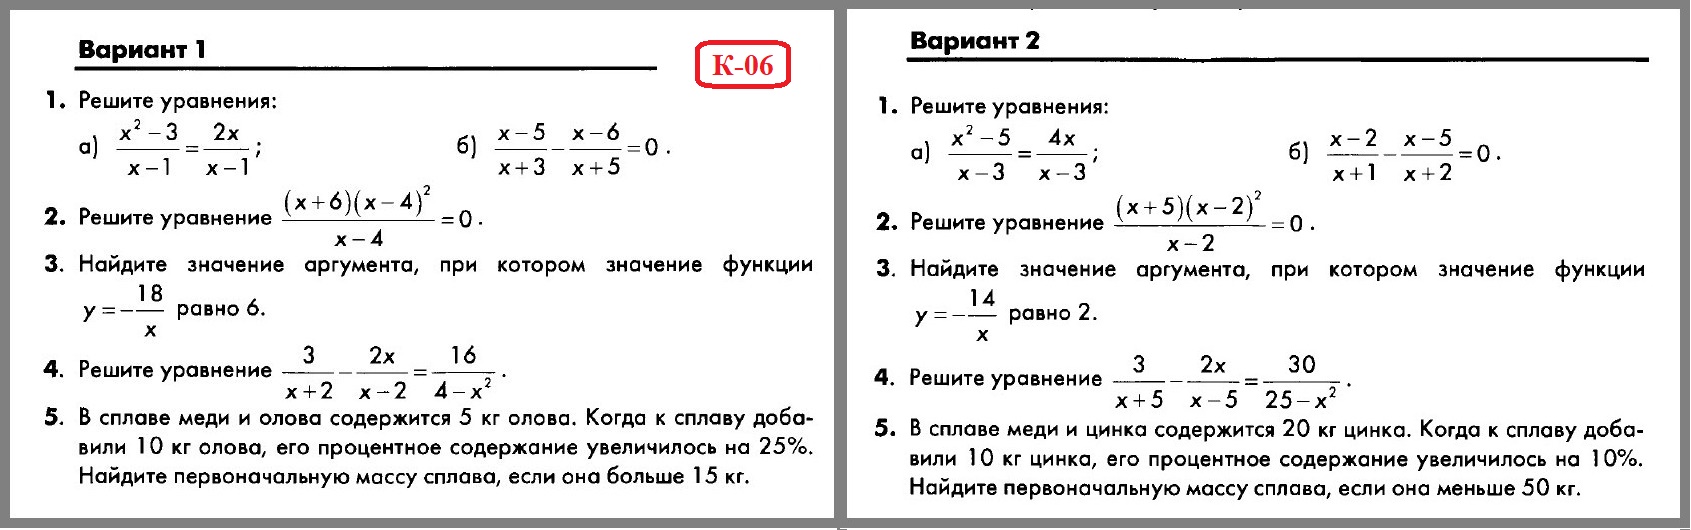 Дробные Рациональные Уравнения 8 Класс Контрольная Работа